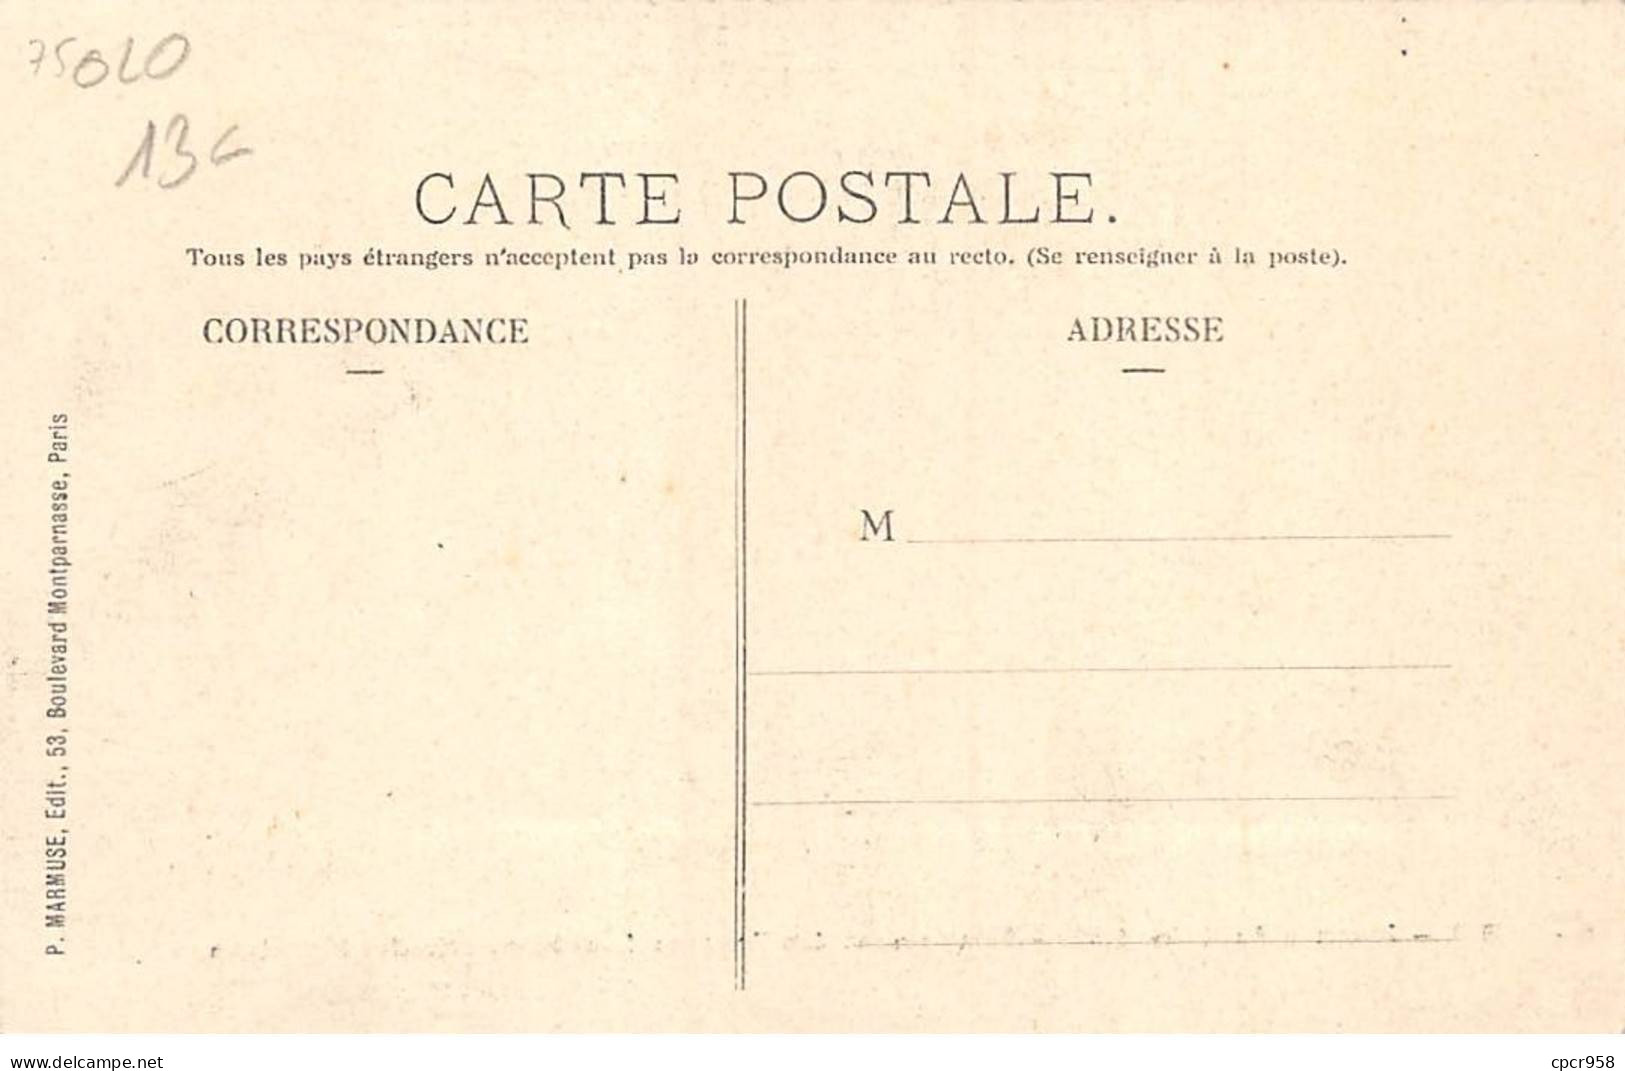 75020-SAN59897-PARIS.Journée Du 1er Mai 1903.Campement Des Troupes Dans La Galerie Des Machines - Arrondissement: 20